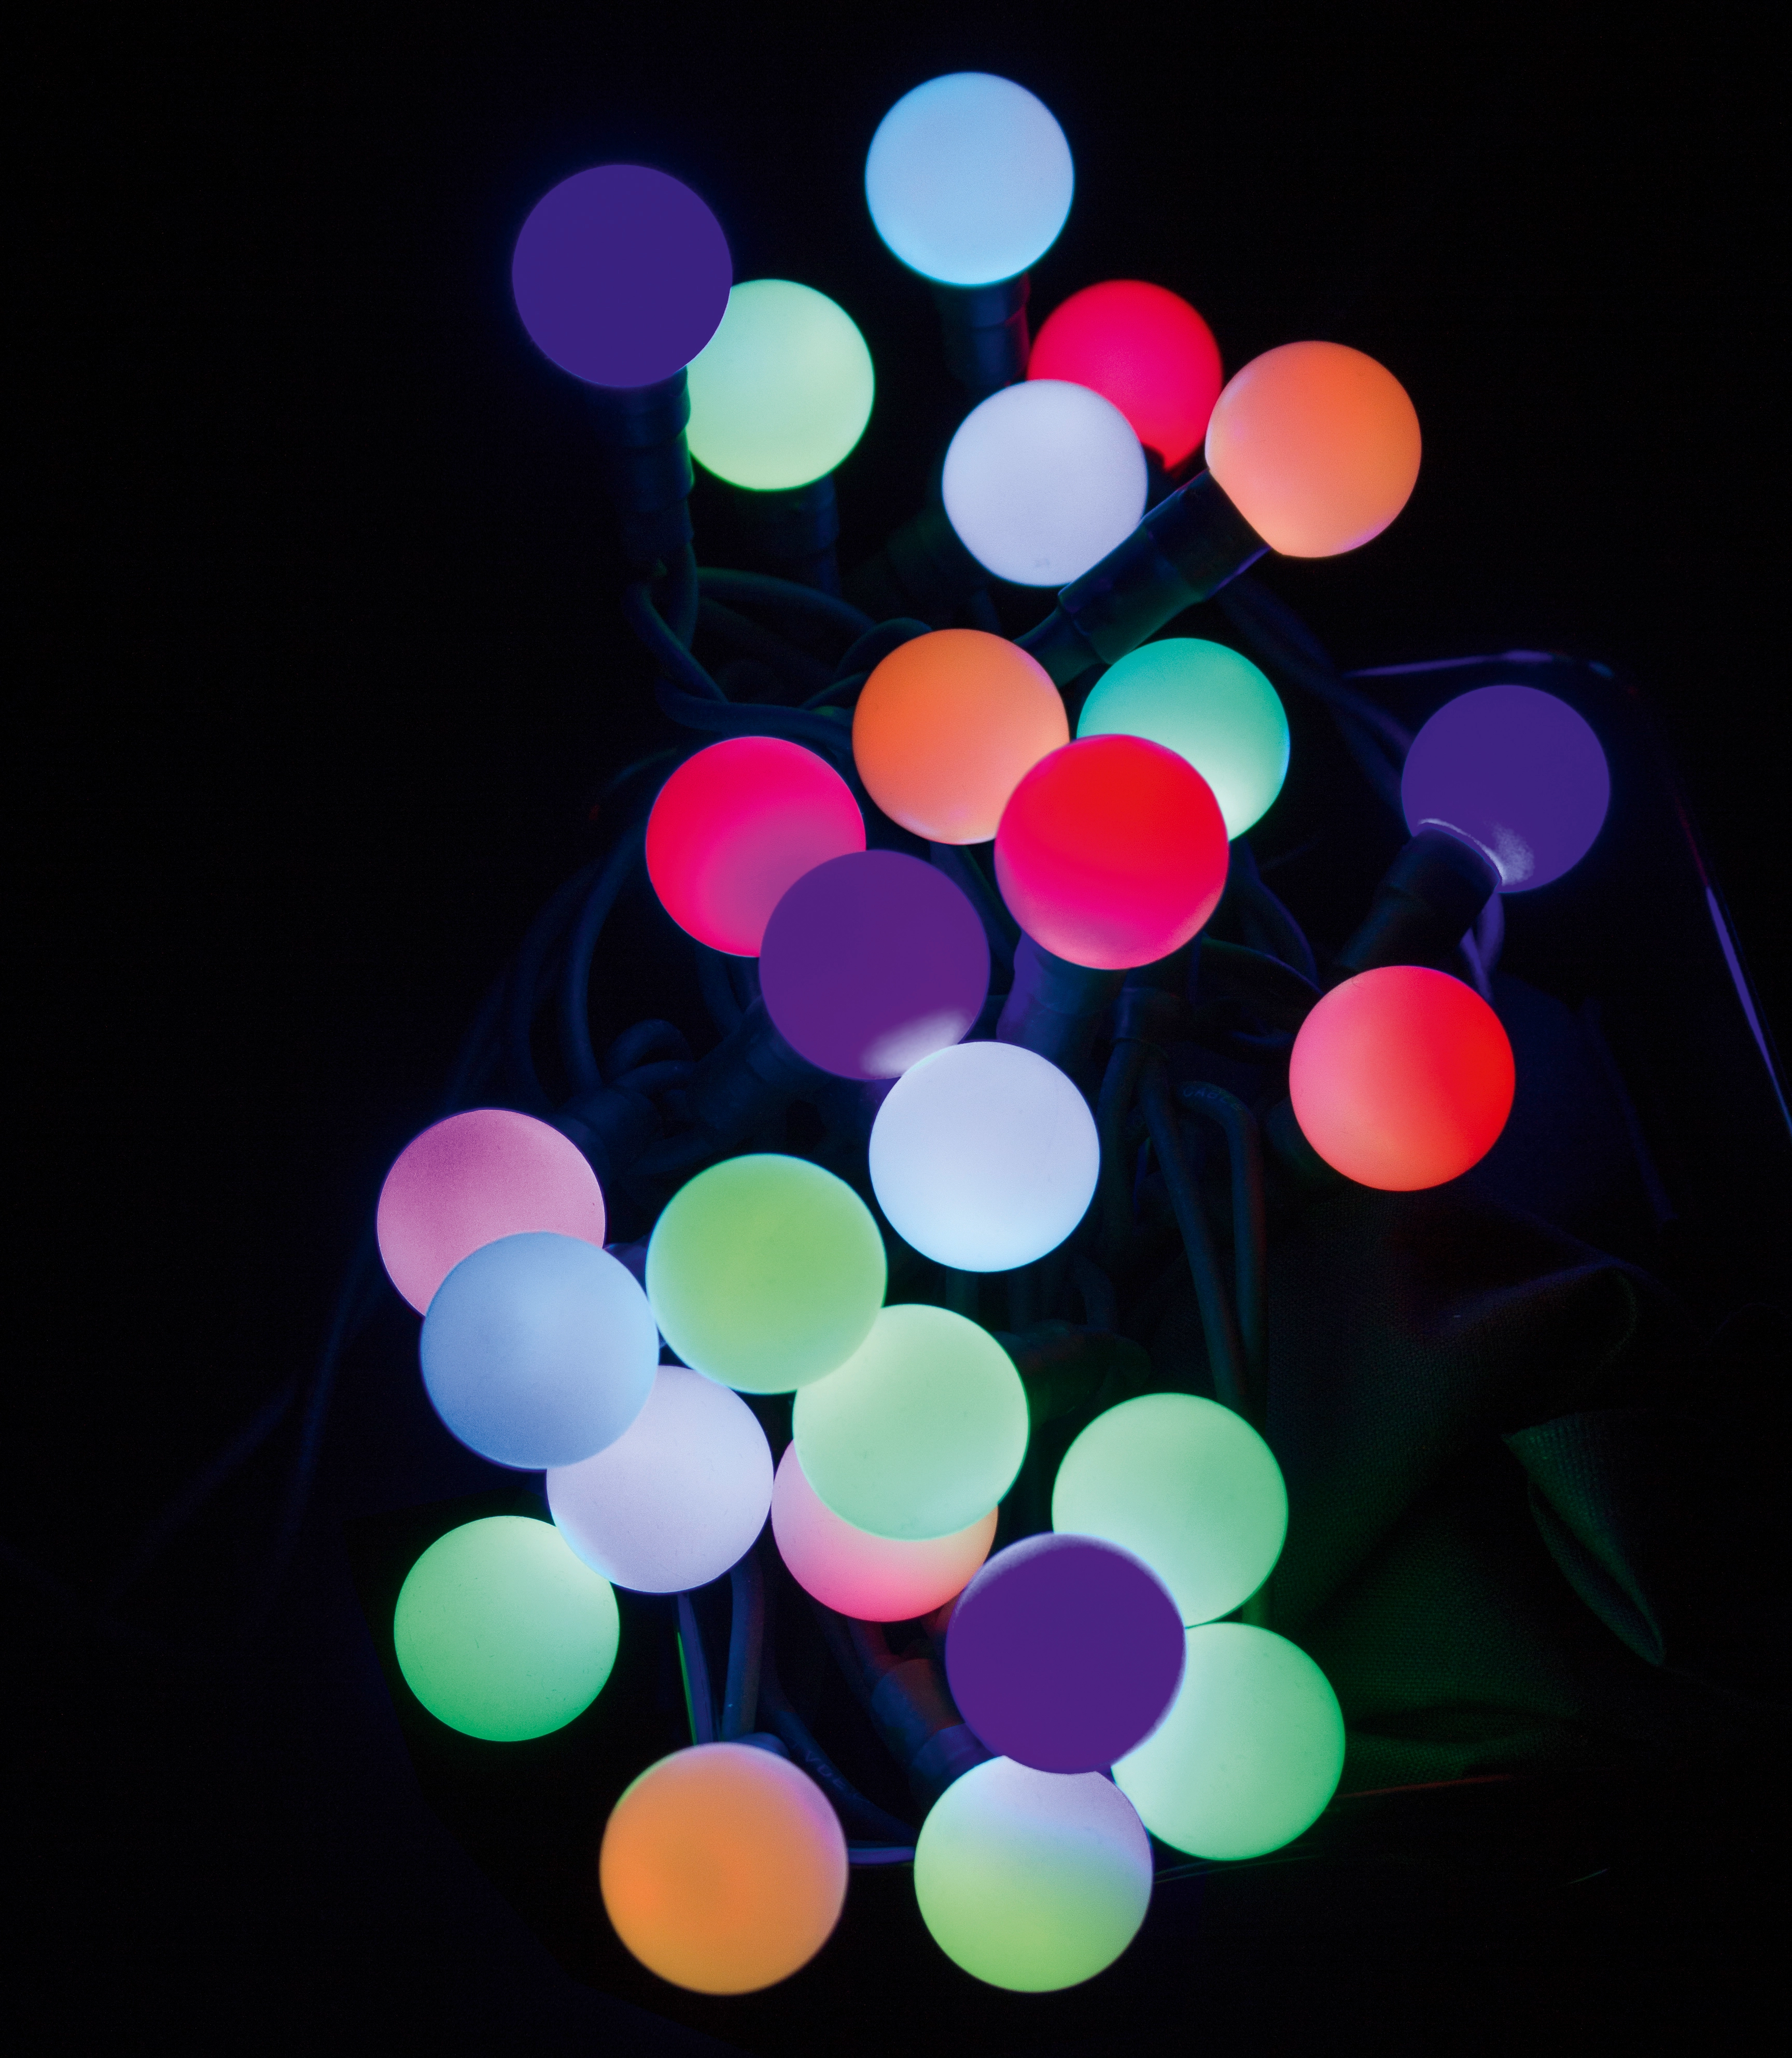 GardenLine Guirlande lumineuse LED RGB pour fêtes Outdoor multicolore 10 m